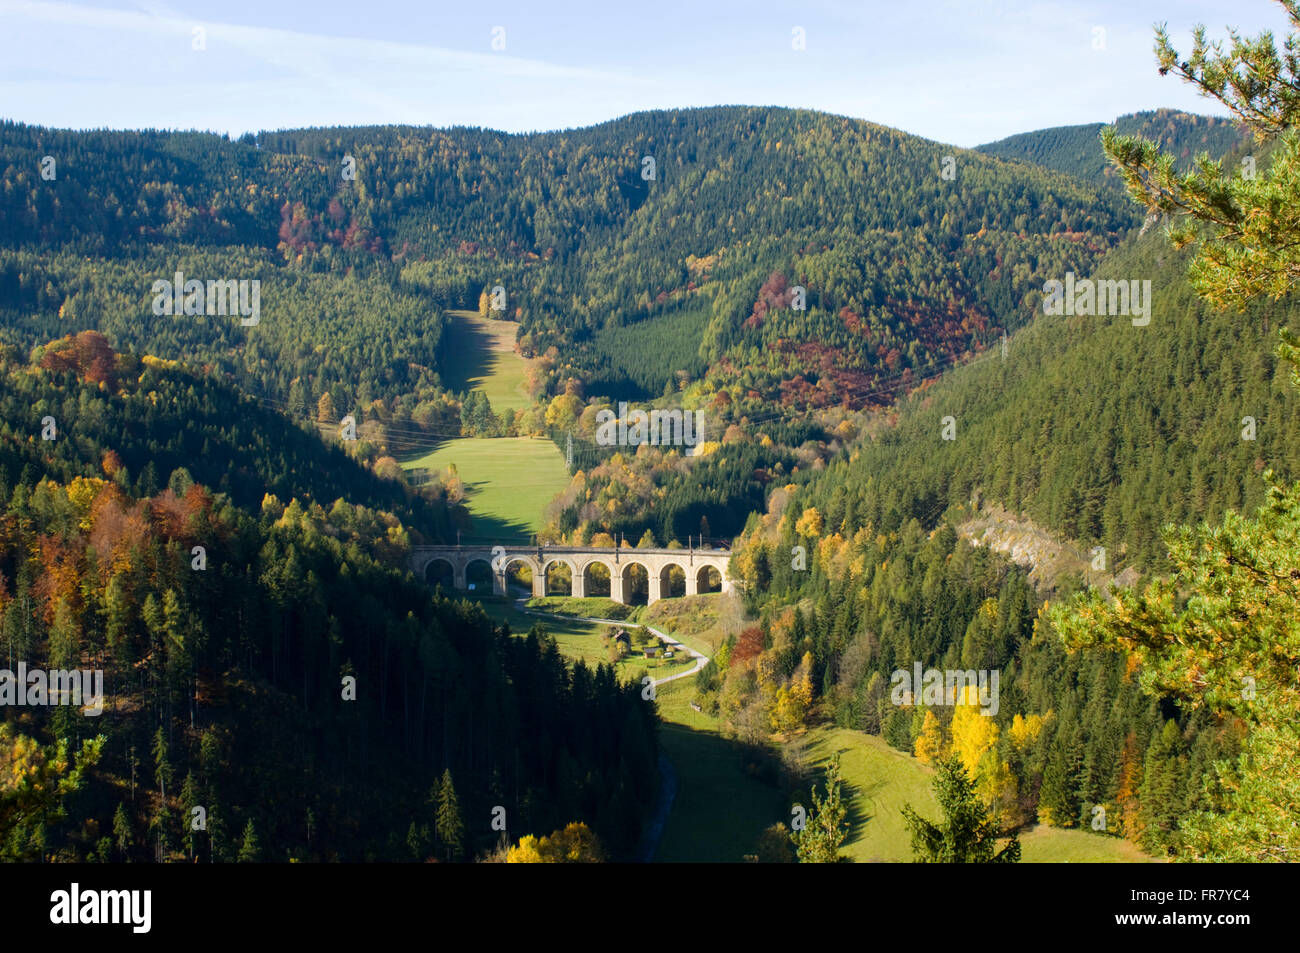 Österreich, Luftkurort Semmering, Blick auf eine Brücke der Semmerimgbahn. Sie war die erste normalspurige Gebirgsbahn Europas, Stock Photo